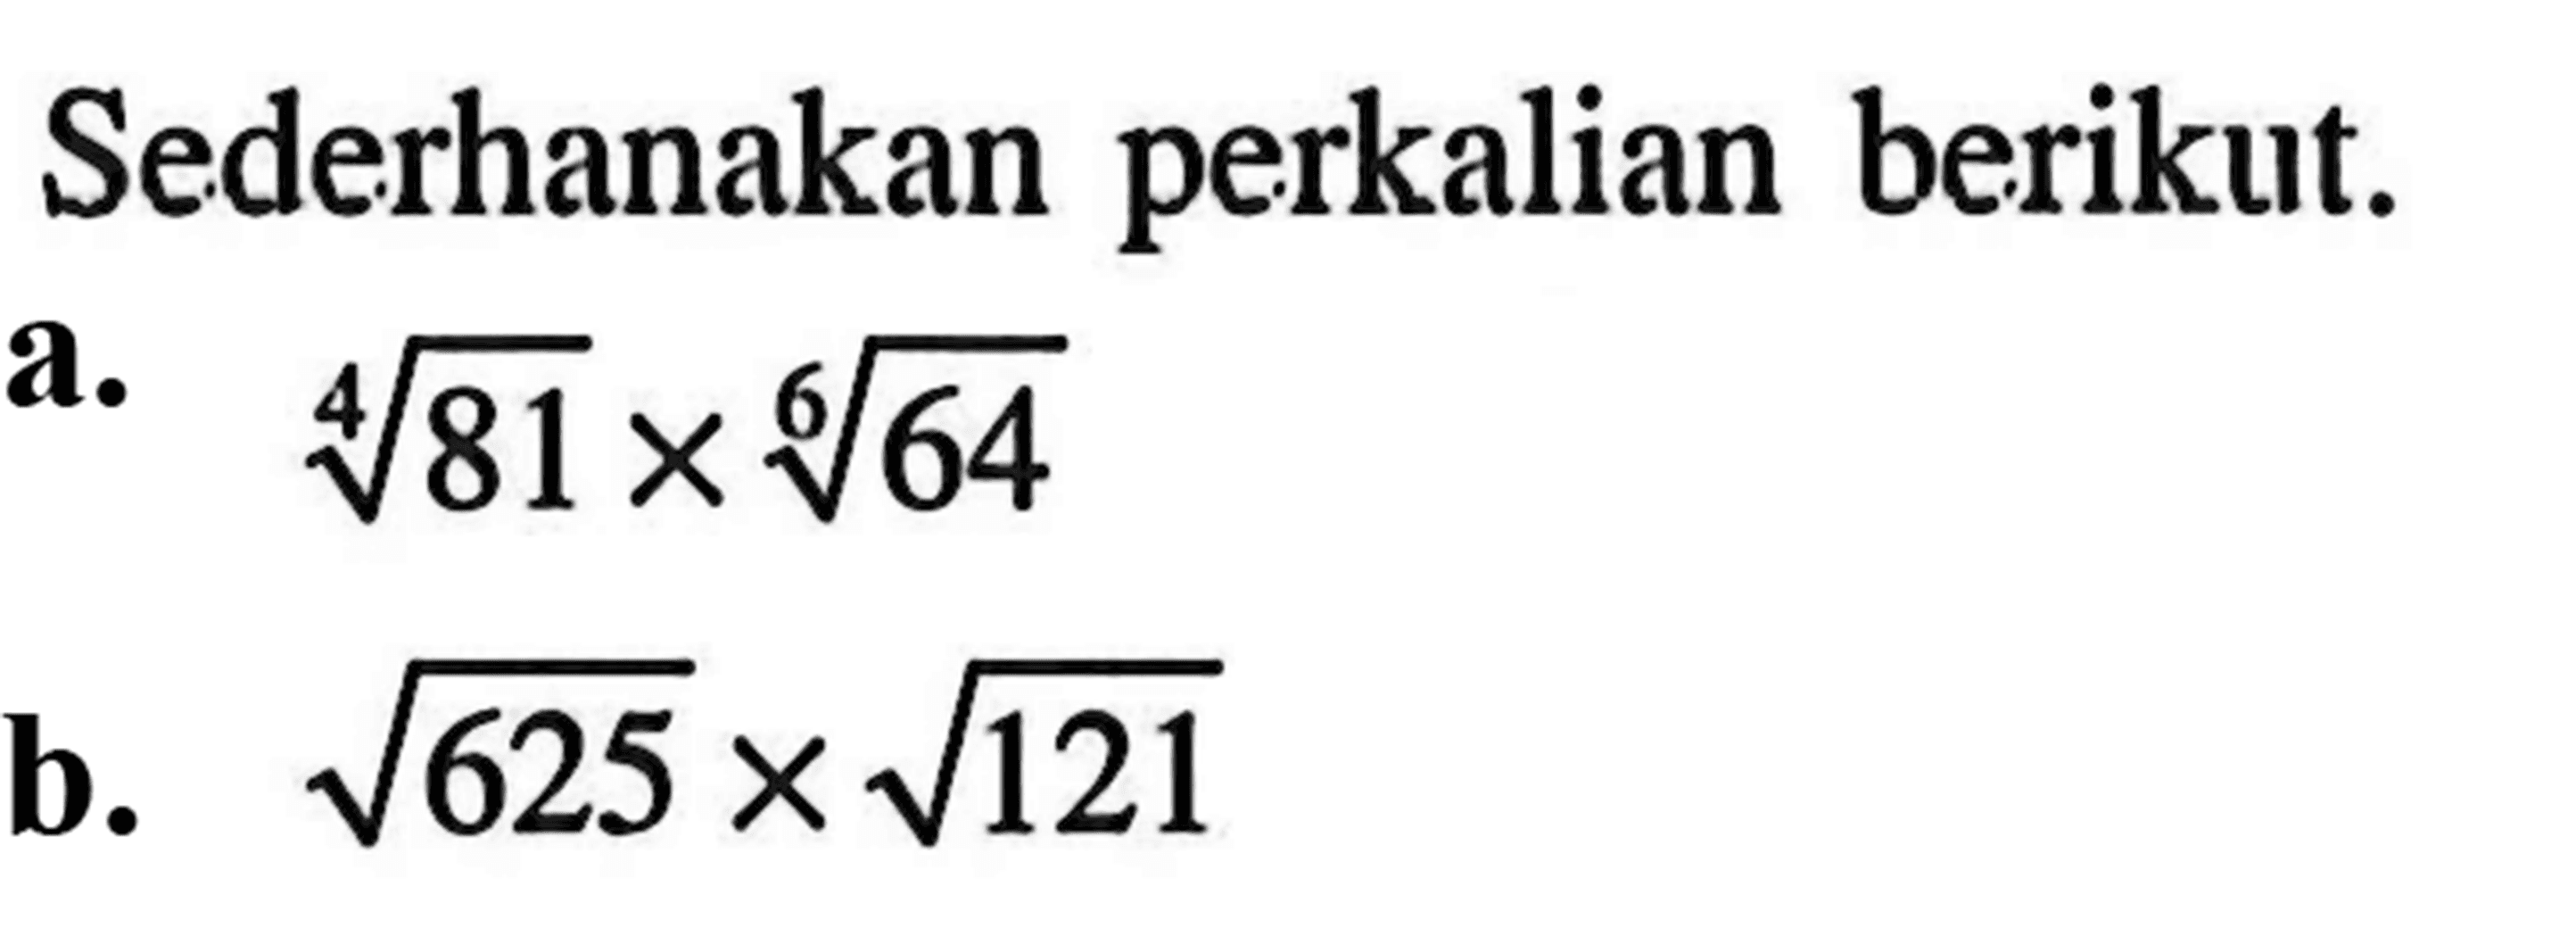 Sederhanakan perkalian berikut. a. (81)^1/4 x (64)^1/6 b. akar(625) x akar(121)